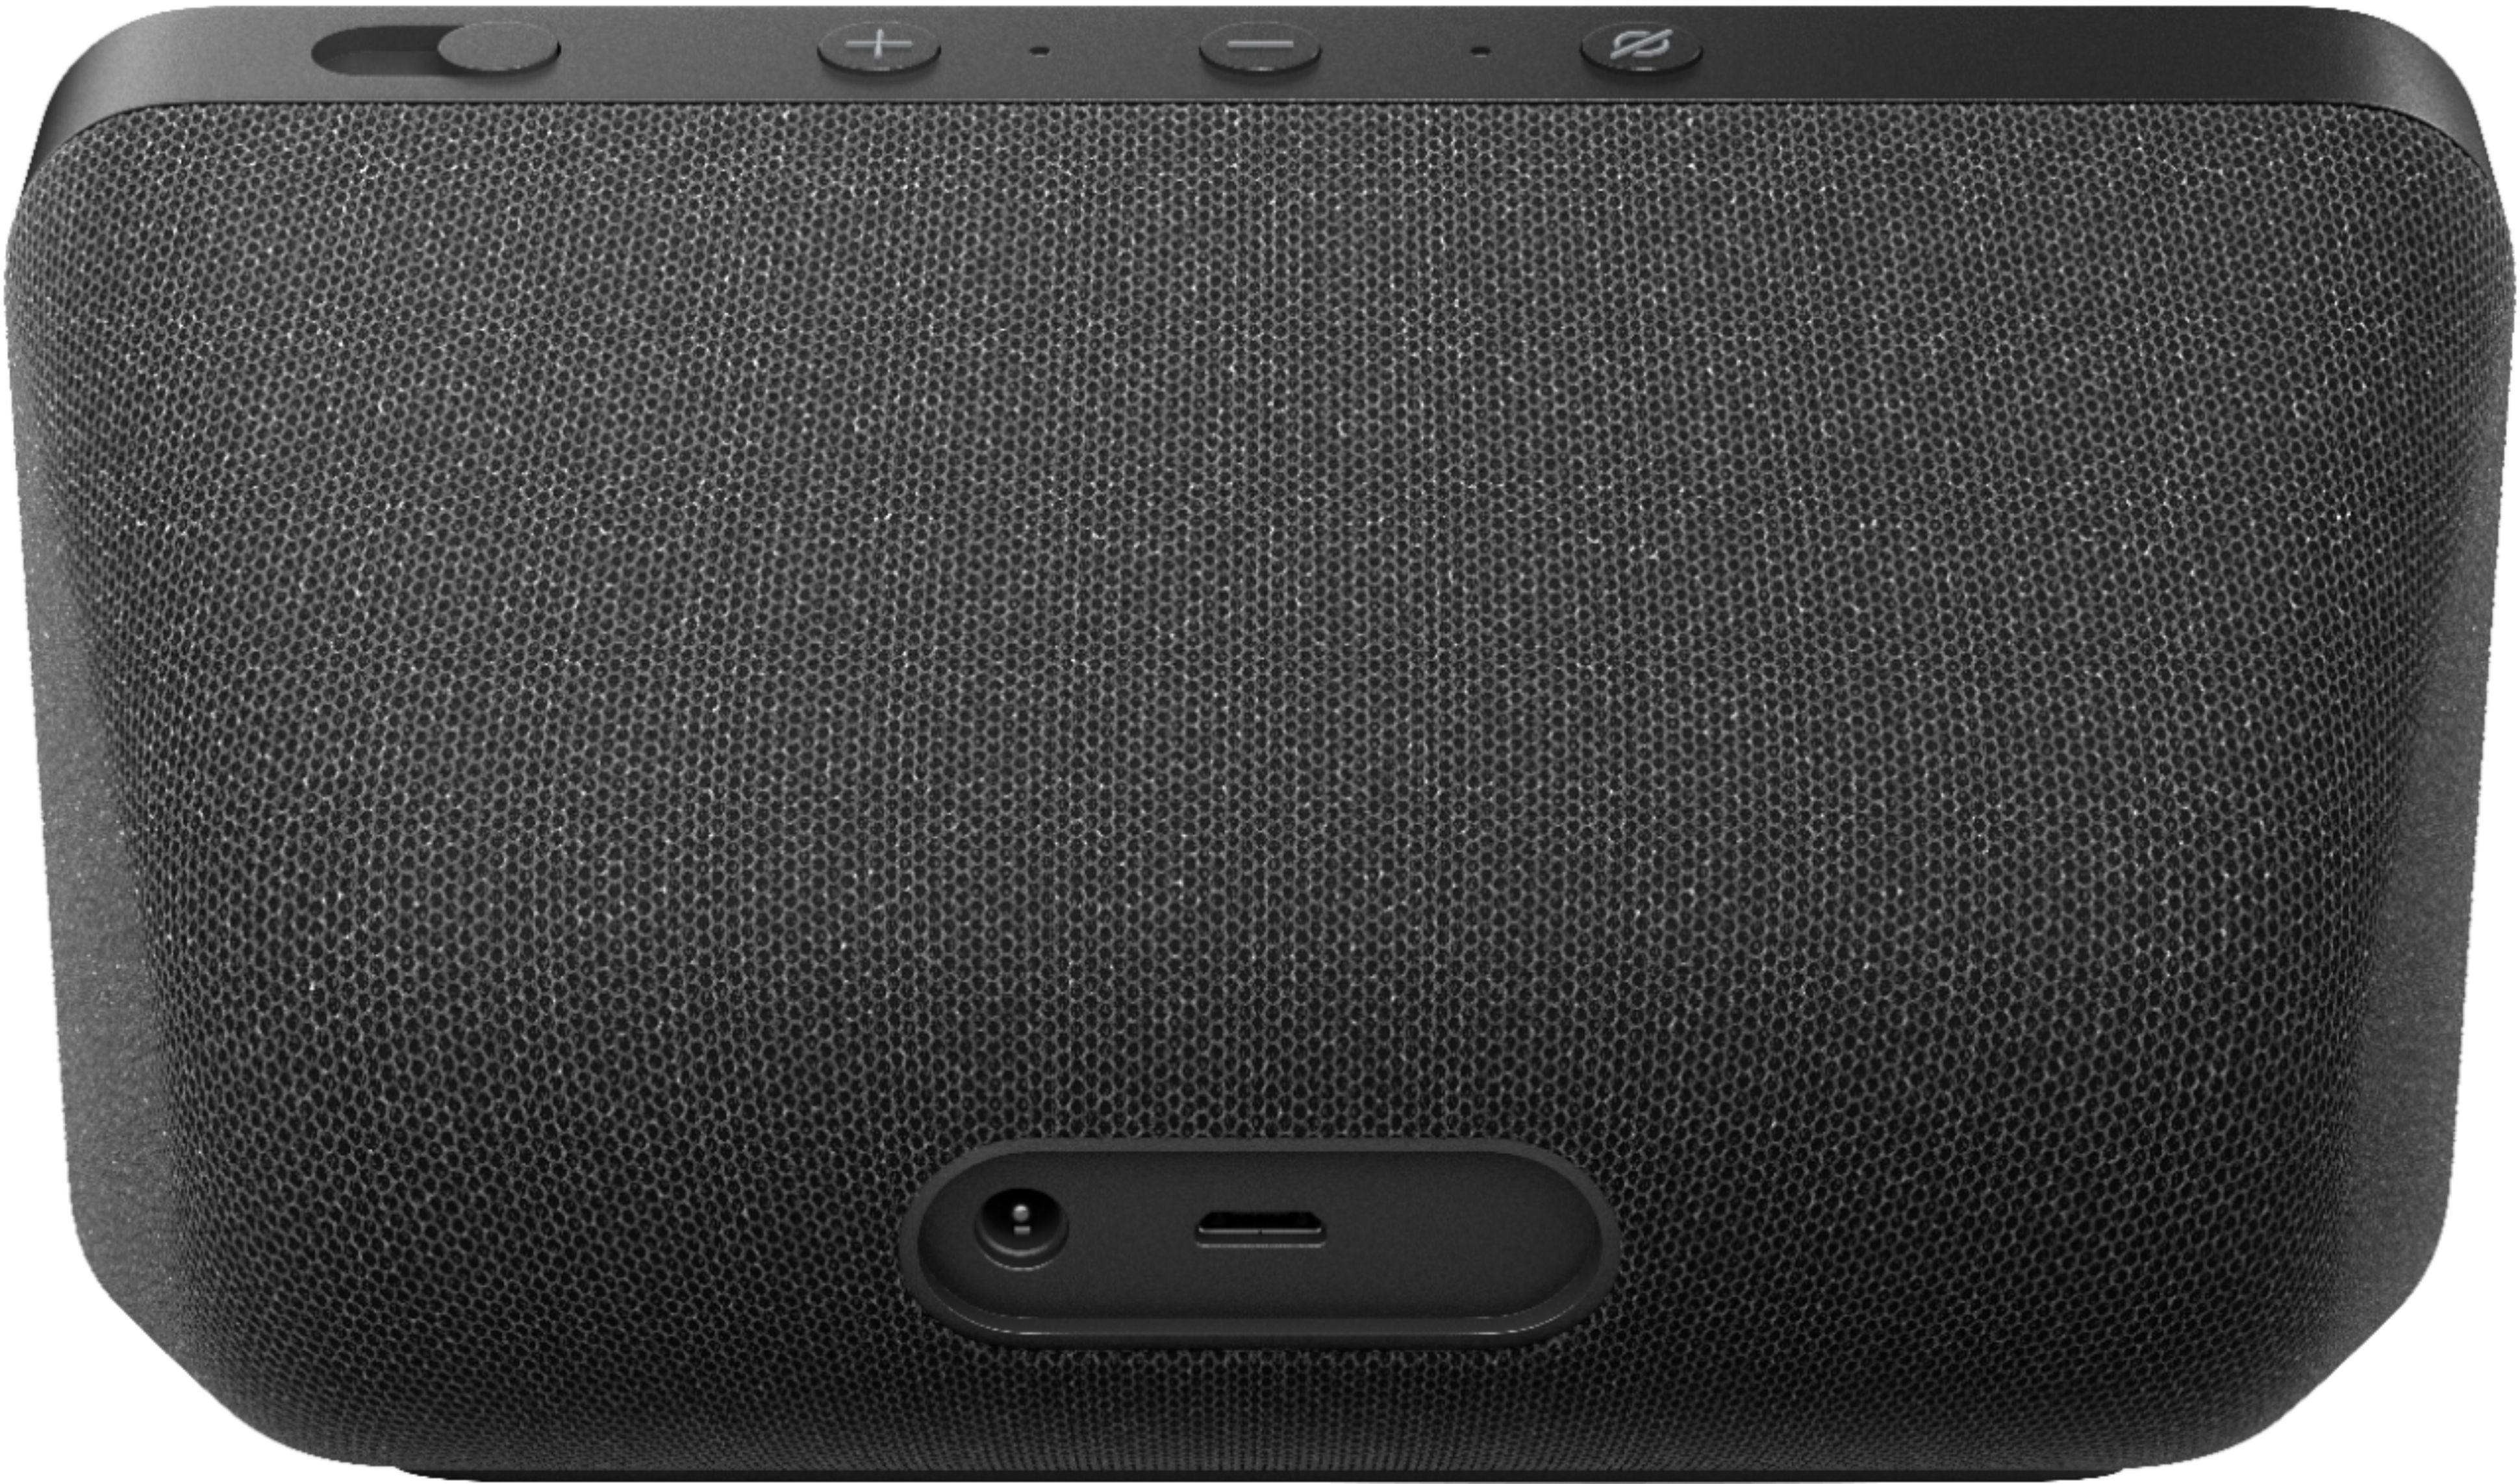 Echo® Show 5 Nuevo (2da generación, edición 2021) Pantalla inteligente HD  Alexa y cámara de 2 MP Carbon comprar en tu tienda online Buscalibre  Estados Unidos